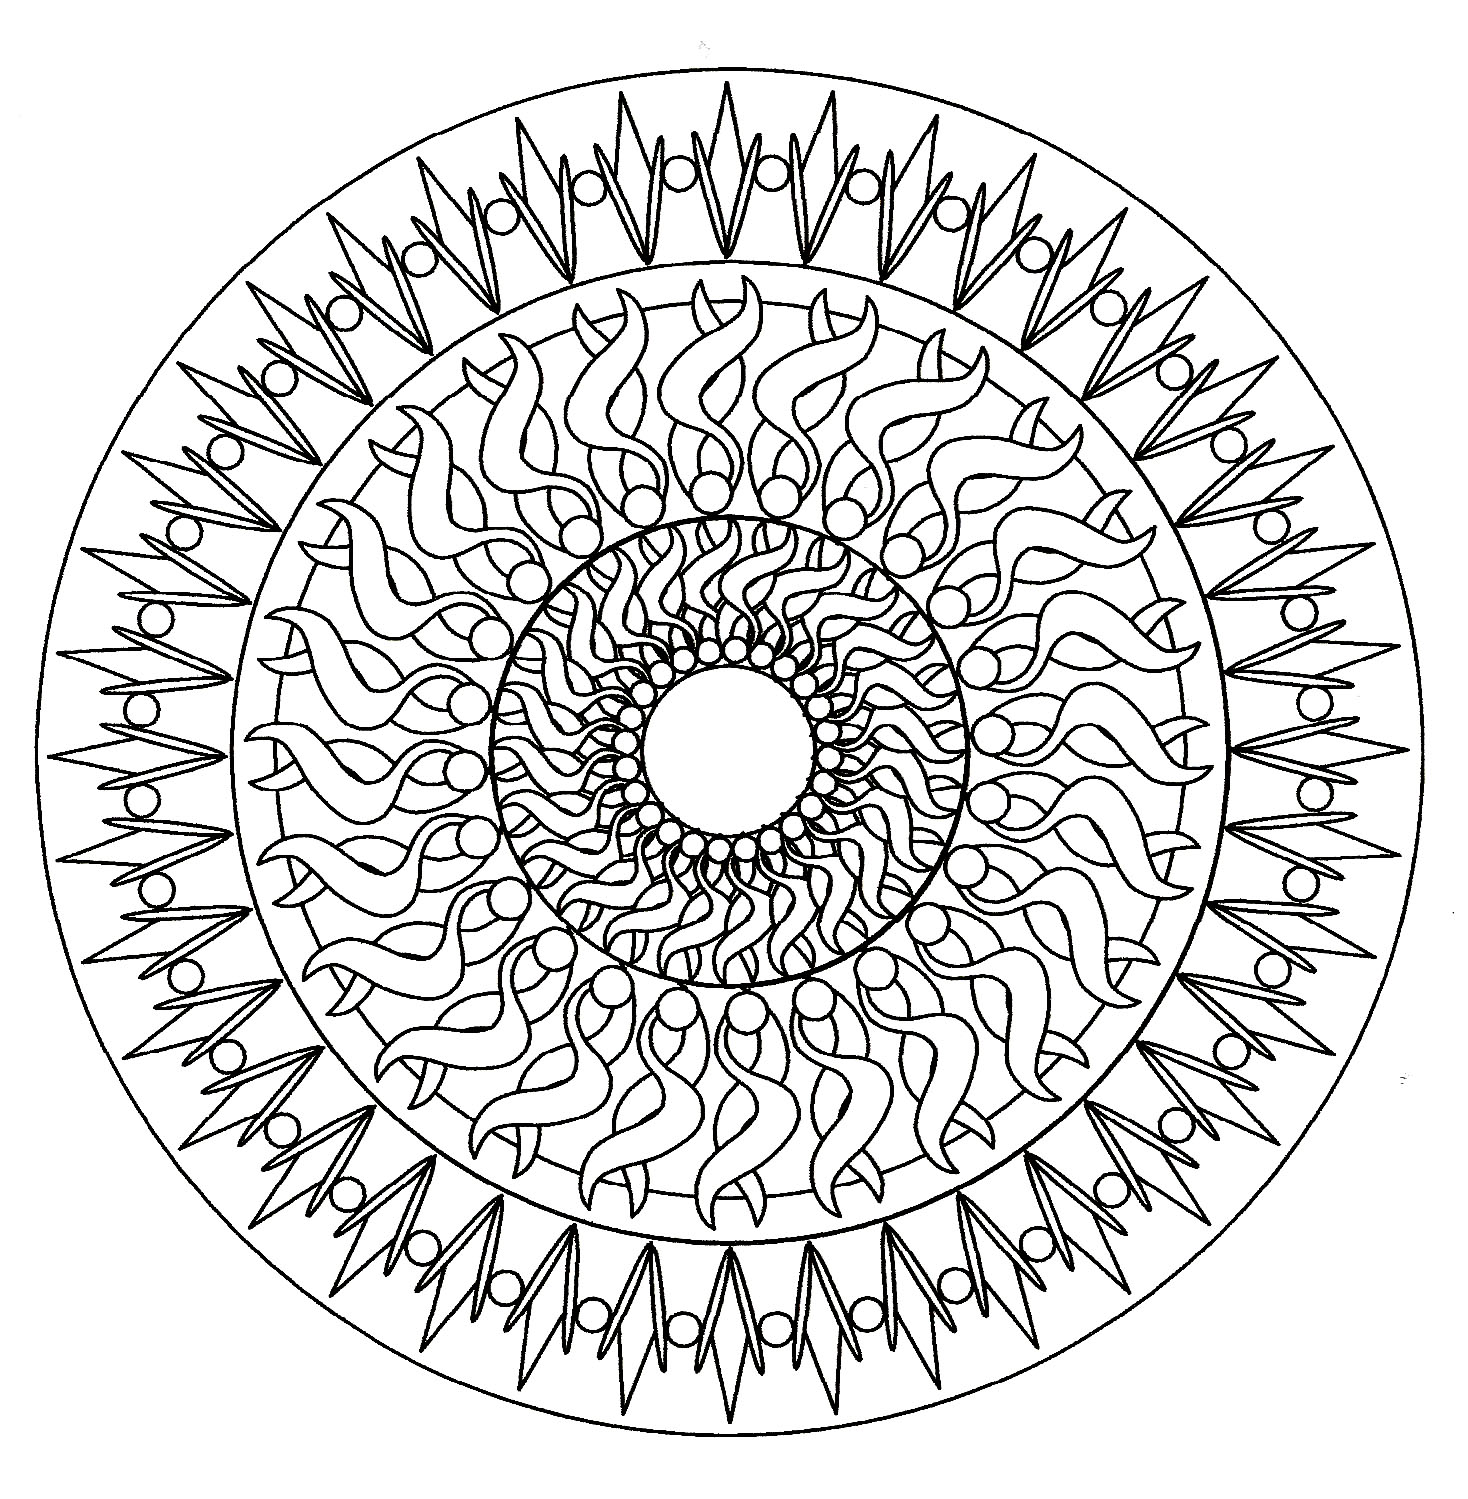 Los geht's mit Minuten der Entspannung mit diesem wunderschönen Mandala, das aus sehr symmetrischen, geometrischen und harmonischen Formen besteht.